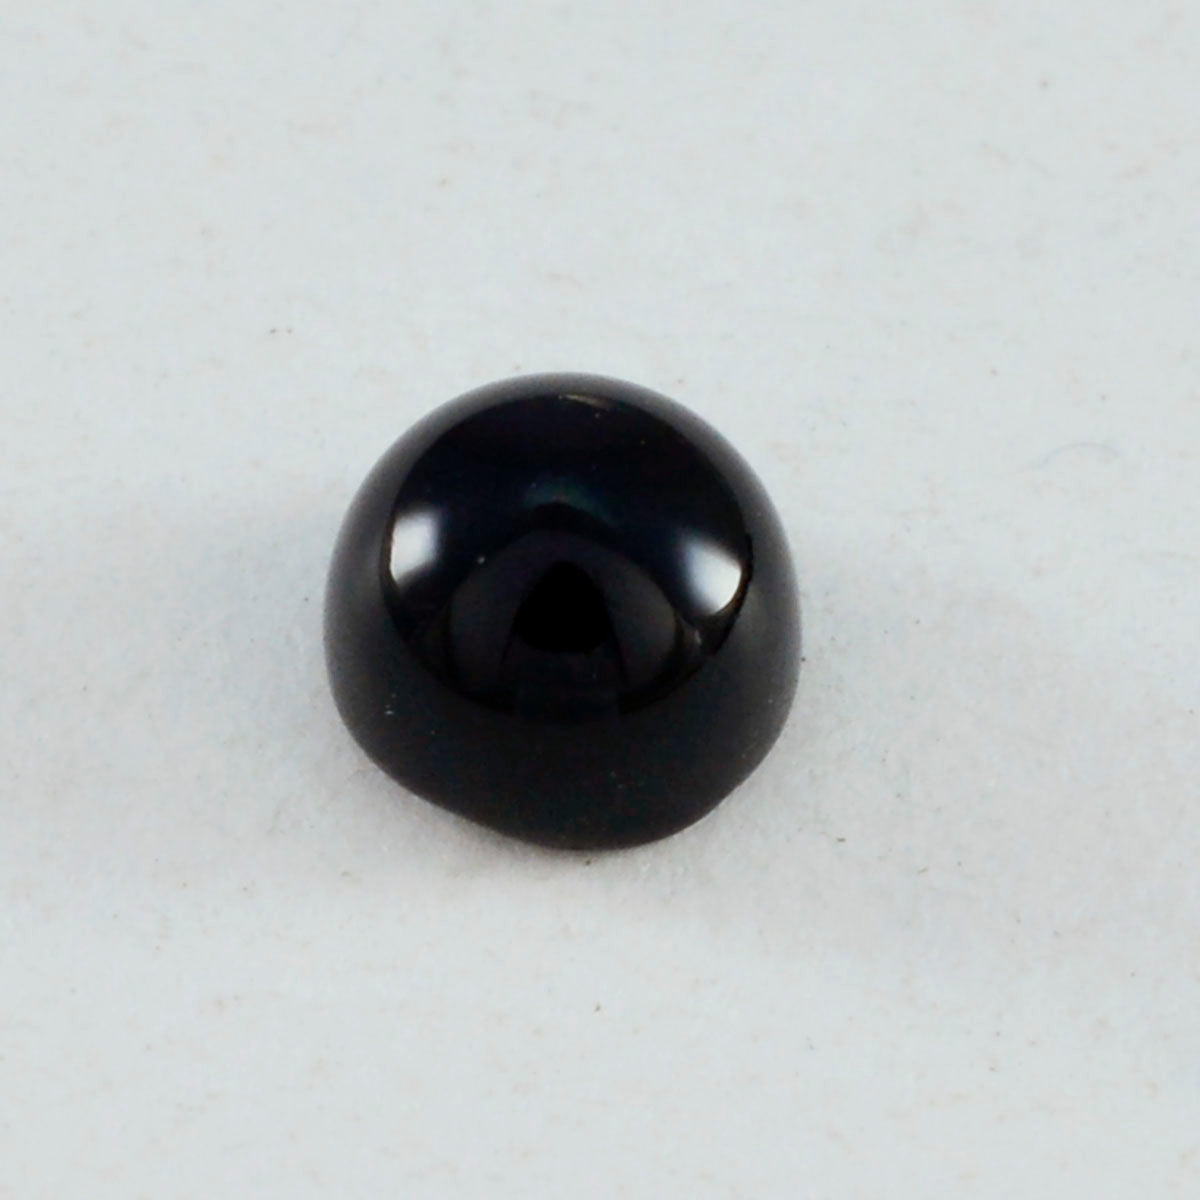 Riyogems 1 pieza cabujón de ónix negro 9X9 mm forma redonda hermosa piedra de calidad